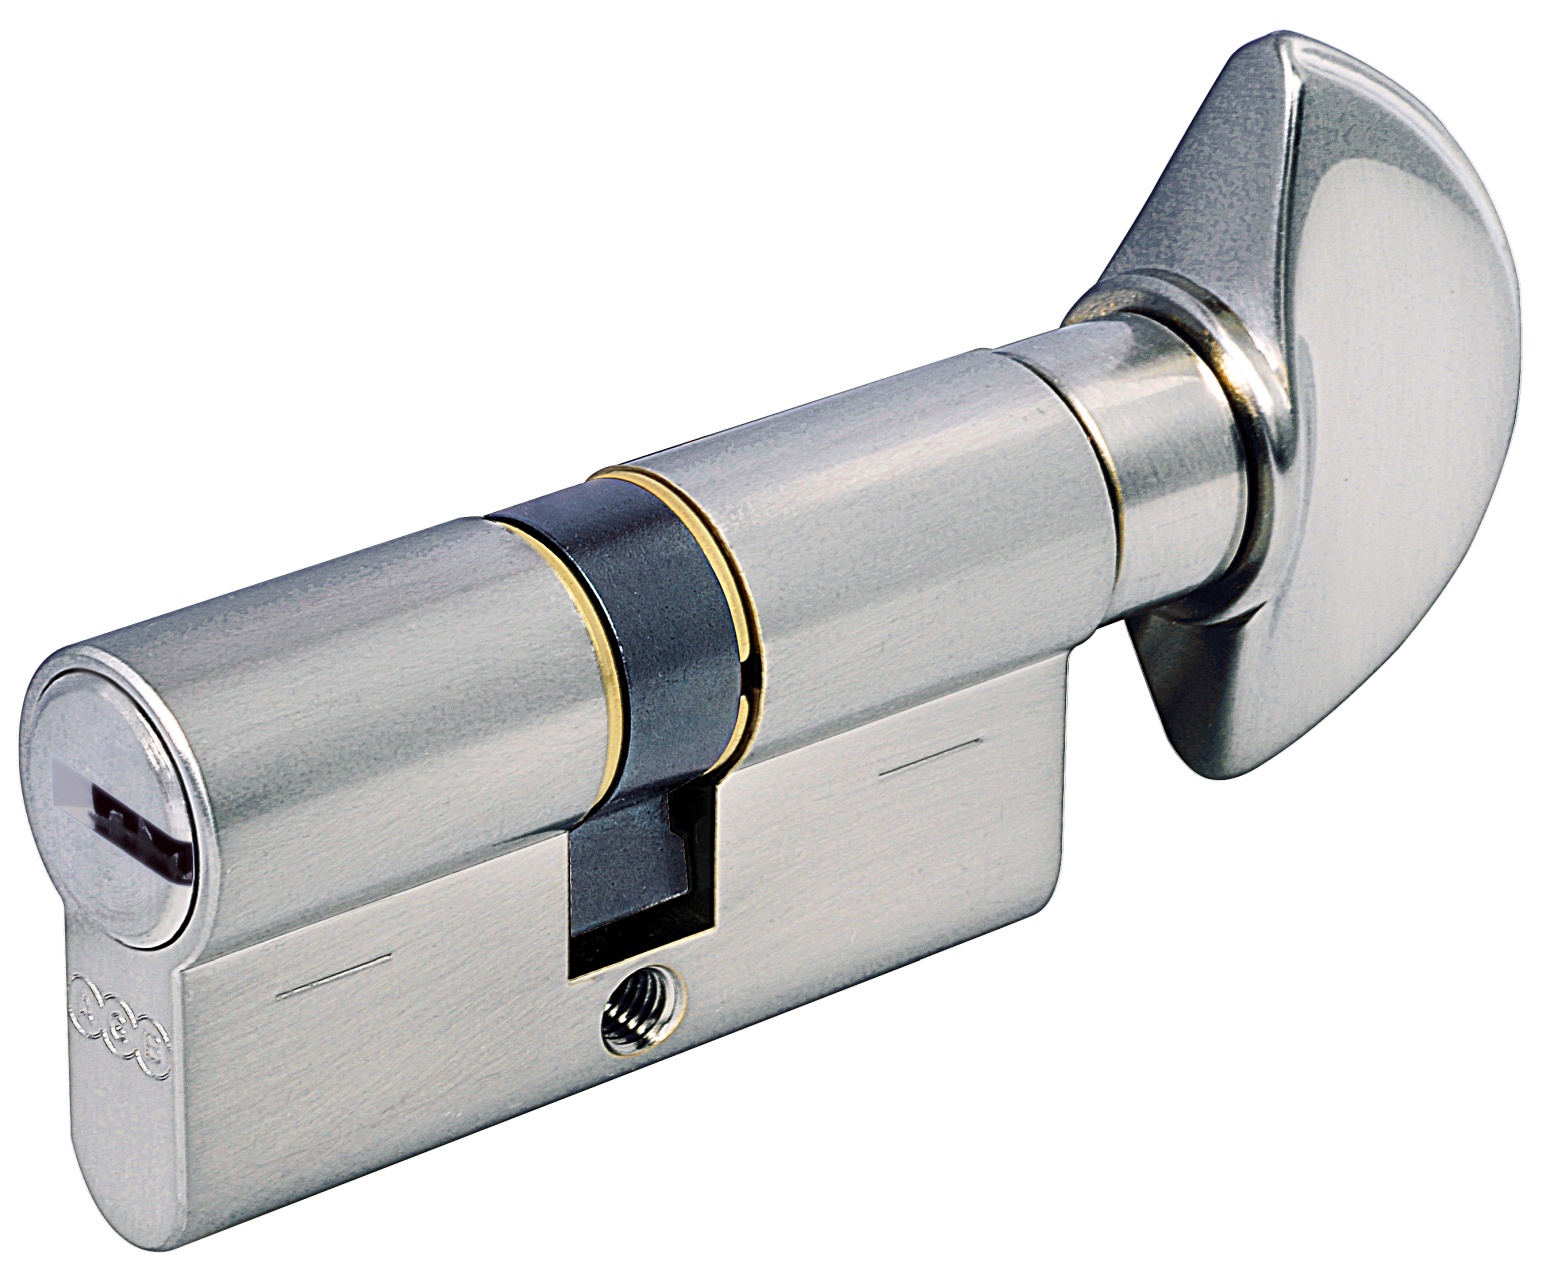 AGB -  Cilindro SCUDO 5000 PS frizionato anti bamping con chiave e pomolo - col. LUCIDO VERNICIATO - lunghezza 65 - misura P-30-10-25